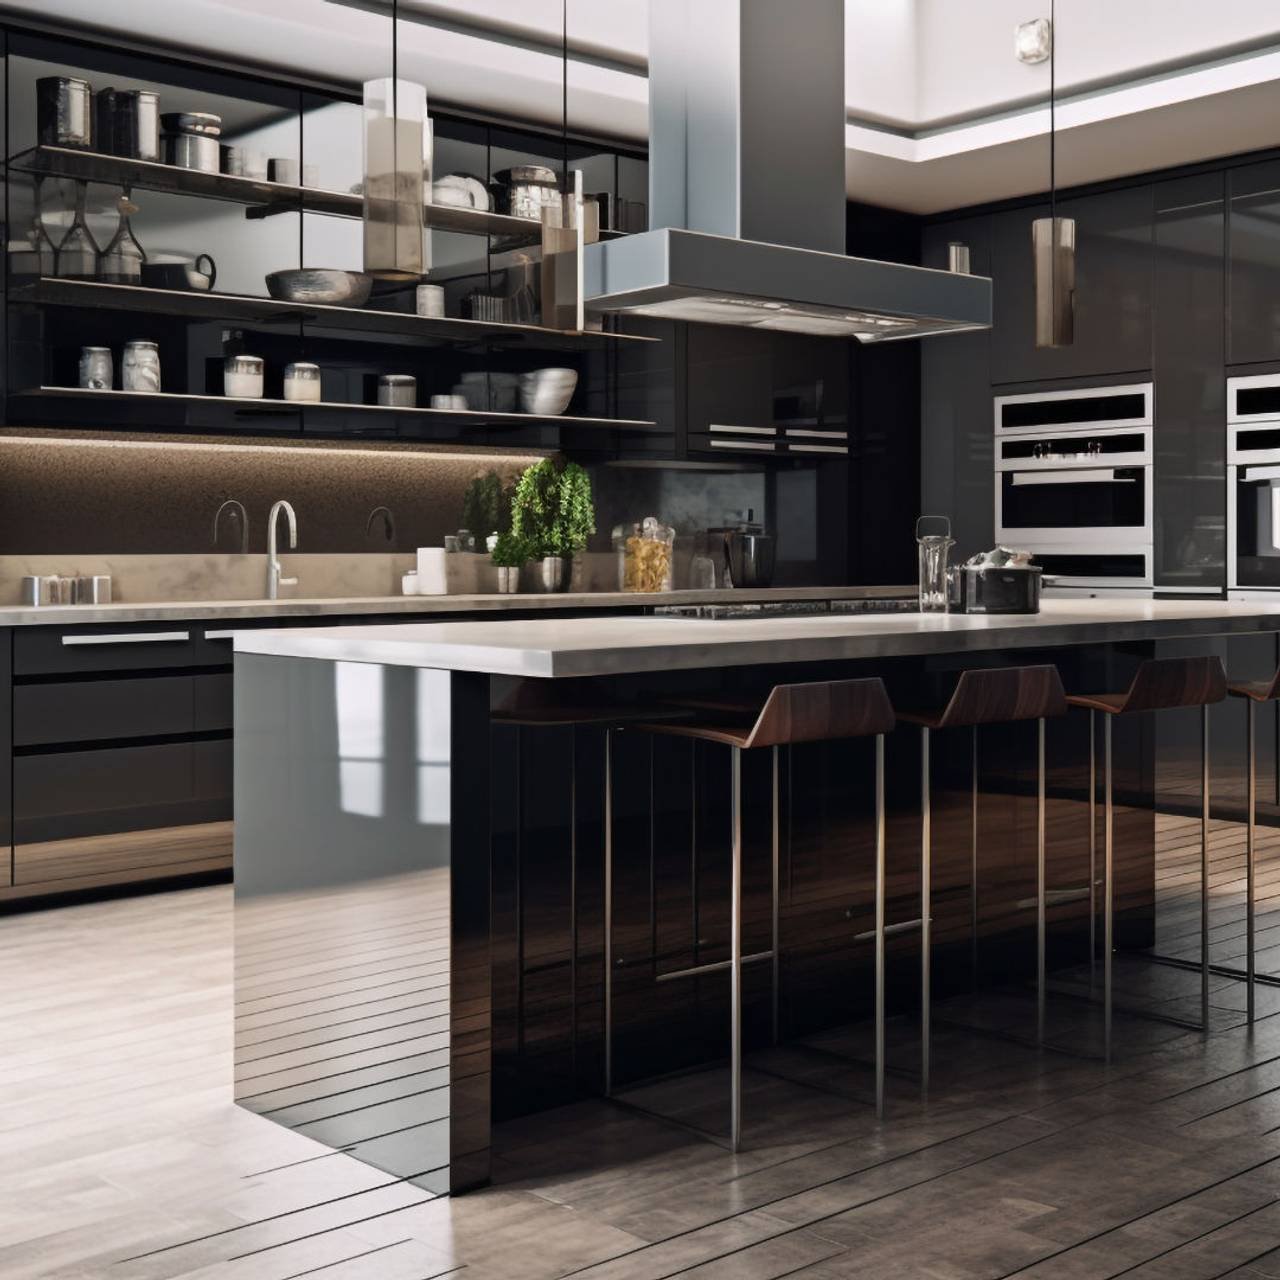 projeto de cozinha moderna com utensilios de aco inoxidavel e piso de marmore